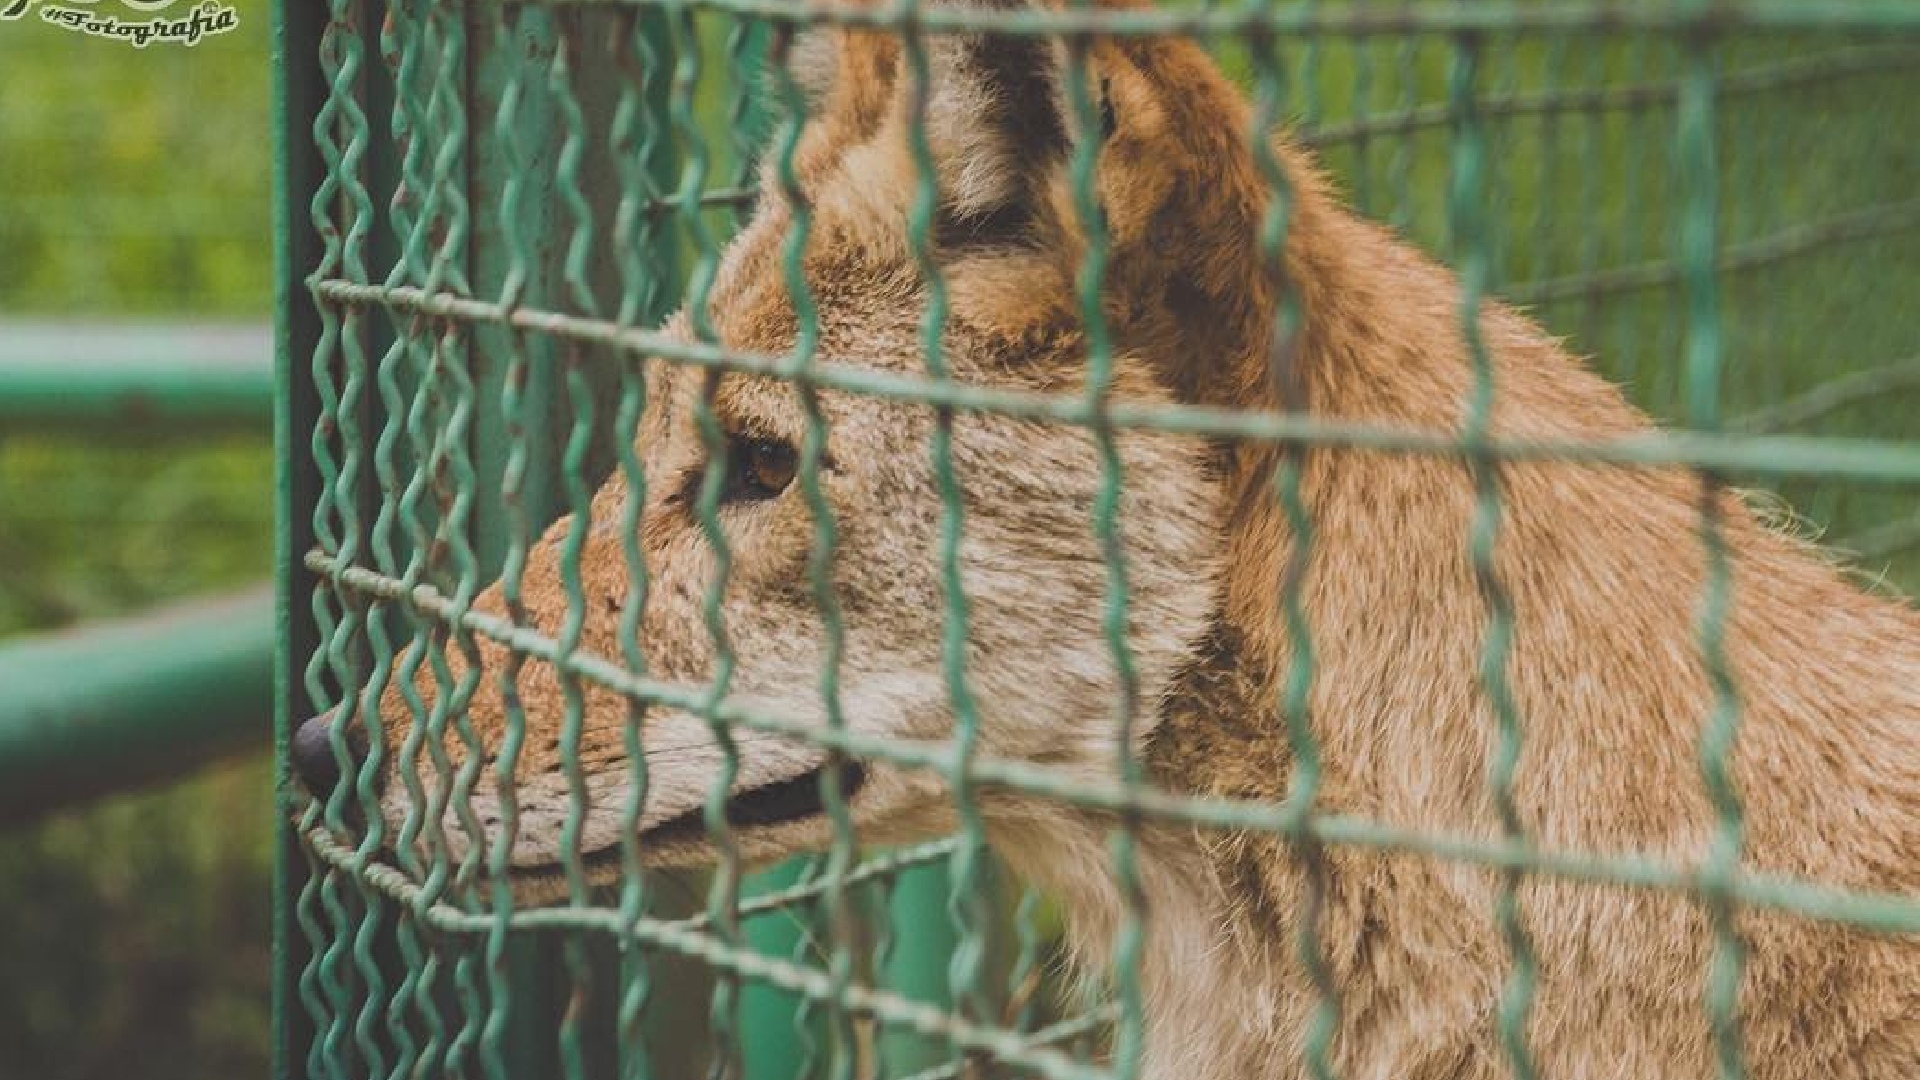 Un niño fue mordido por un lobo en el zoológico de Nezahualcóyotl y casi le  arrancó el brazo, después de ser dado de alta desea ver al animal - Infobae